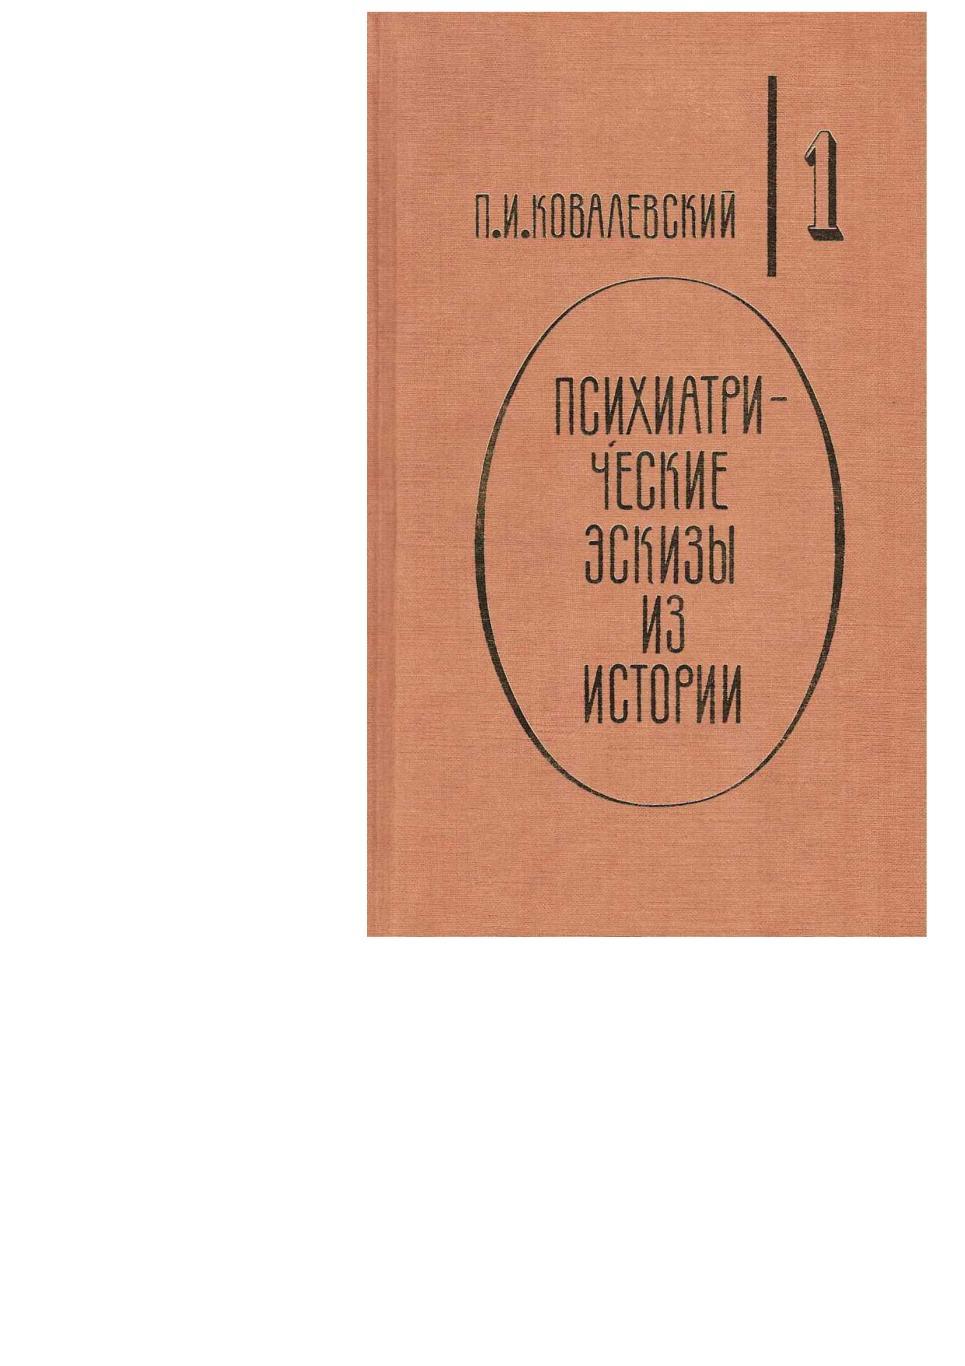 Ковалевский П.И. Психиатрические эскизы из истории. Т. 1. – М., 1995